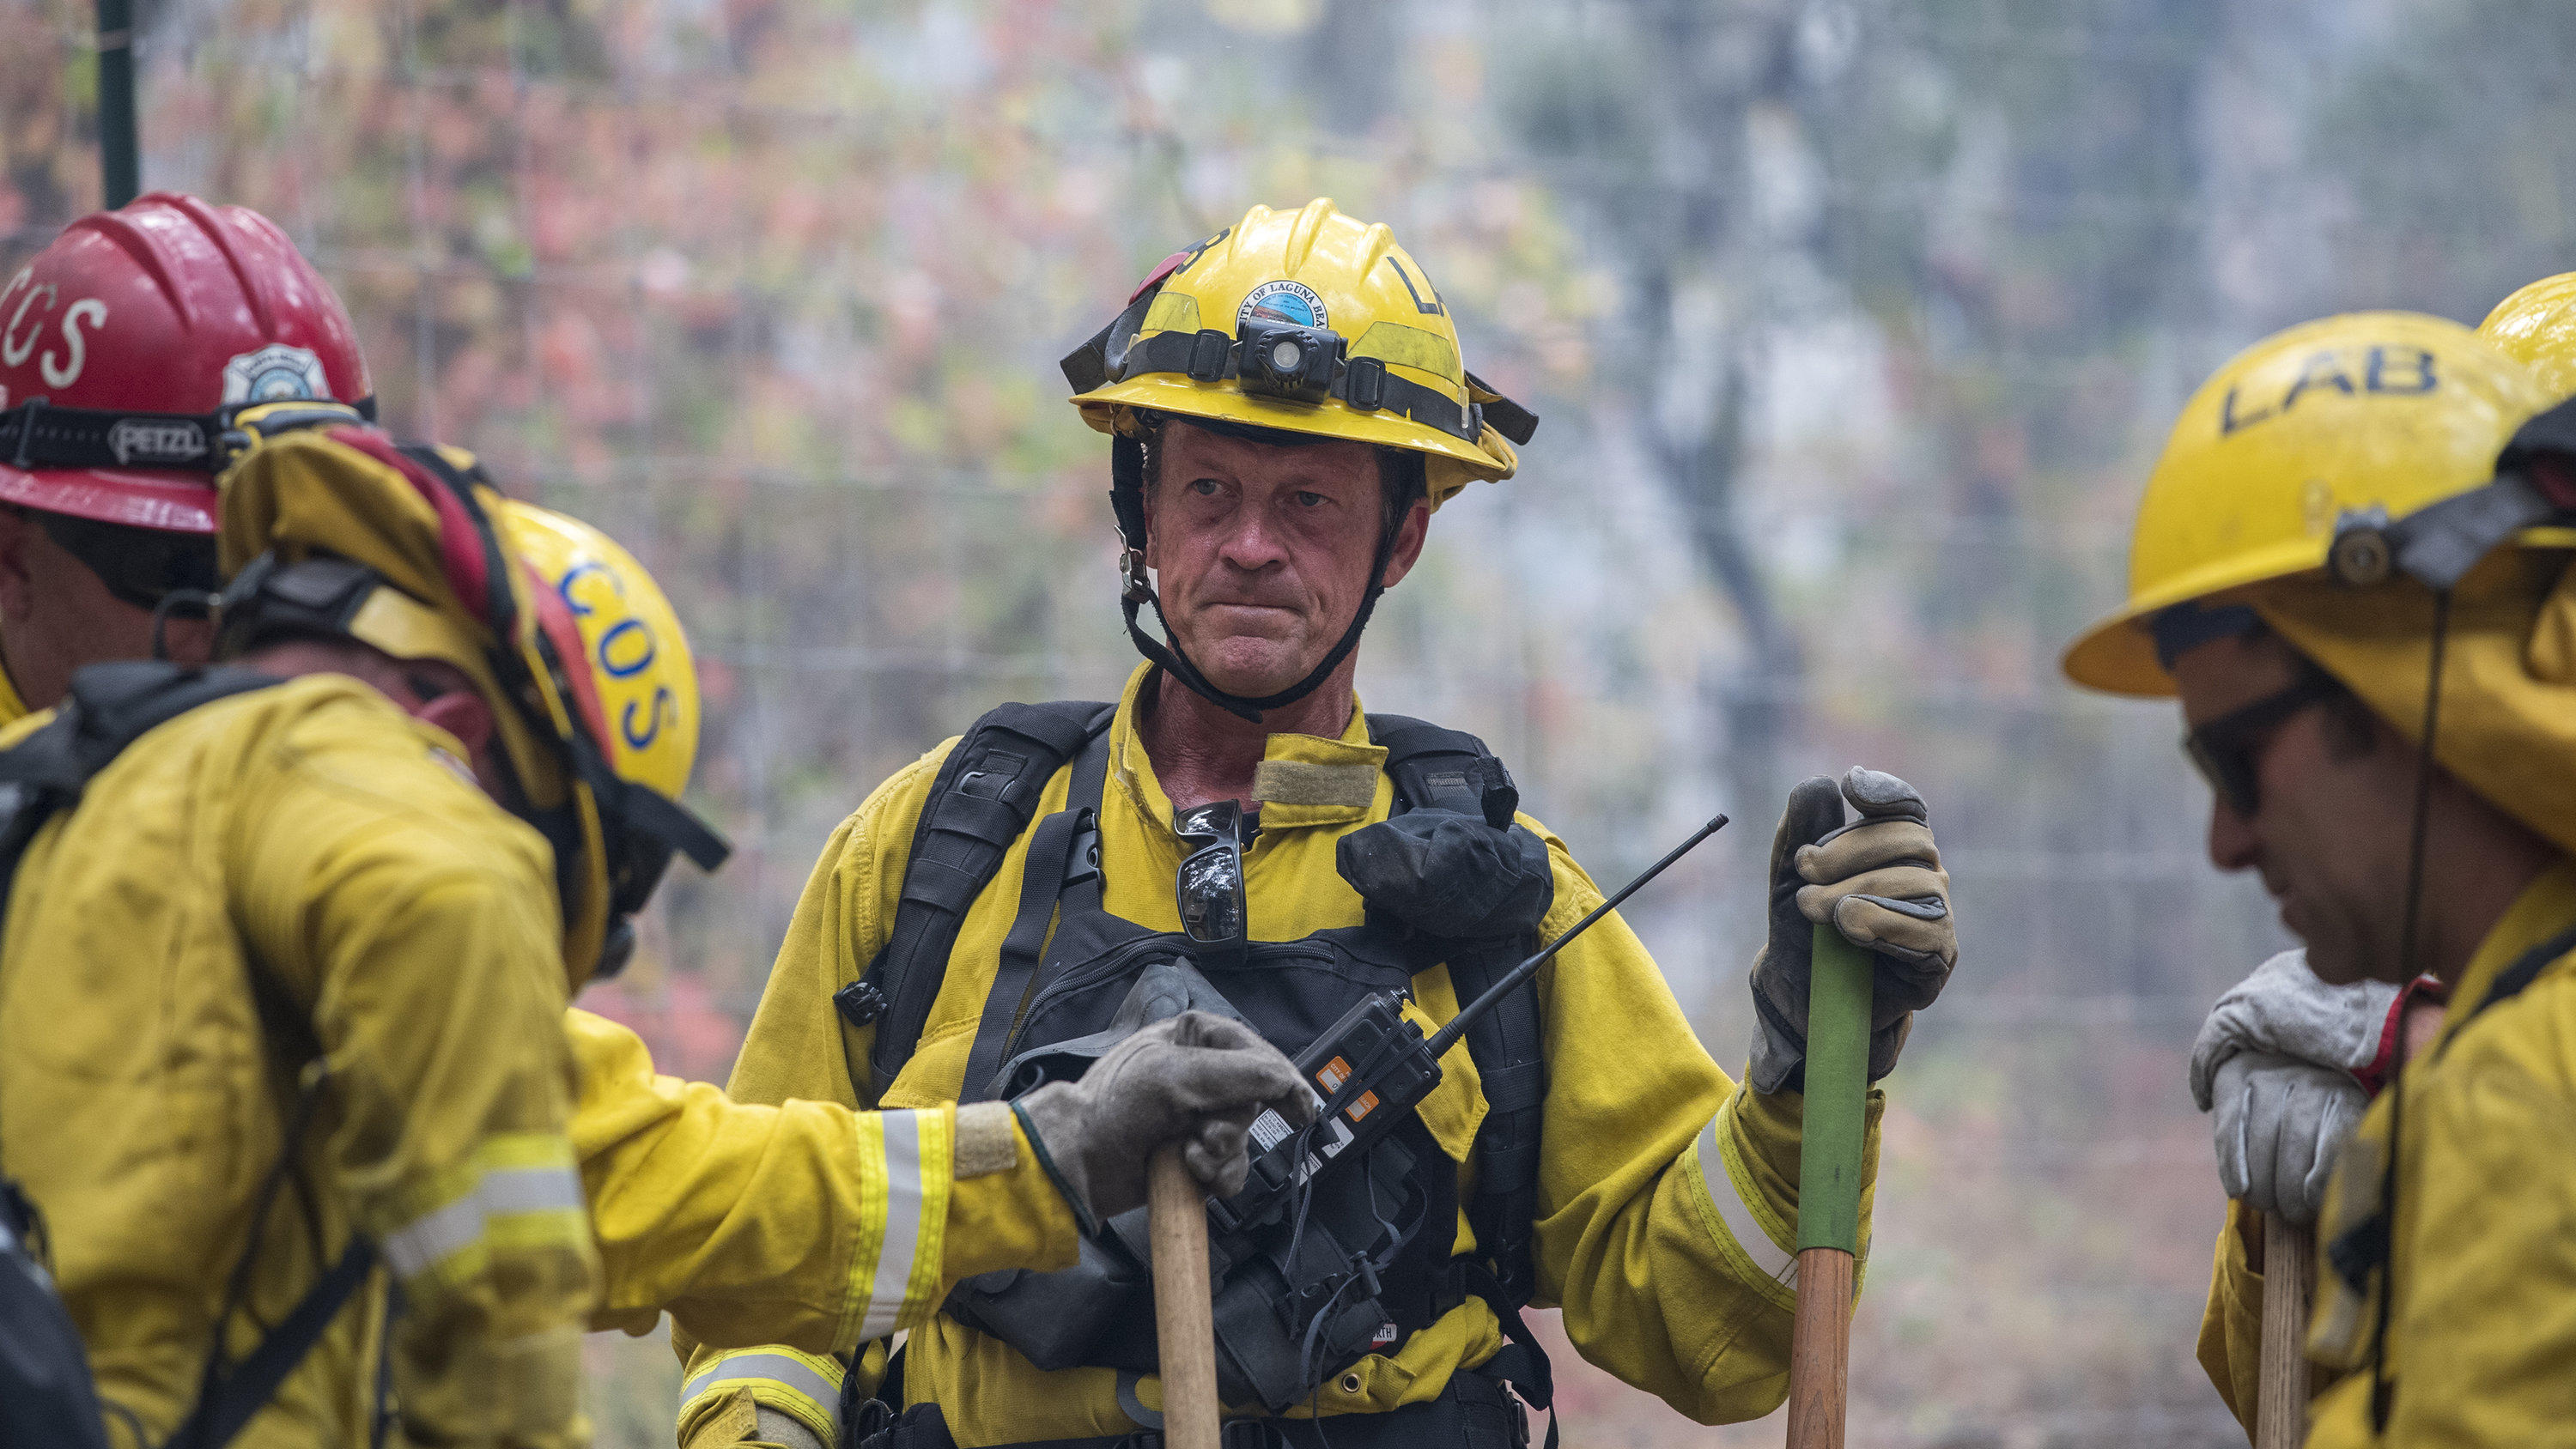 19.08.2020, USA, Carmel Valley: Feuerwehrleute versammeln sich während ihres Einsatzes. Mehr als zwei Dutzend Waldbrände lodern im US-Bundesstaat Kalifornien. Waldbrände in Kalifornien haben Tausende Menschen aus ihren Häusern getrieben. Foto: Nic Co